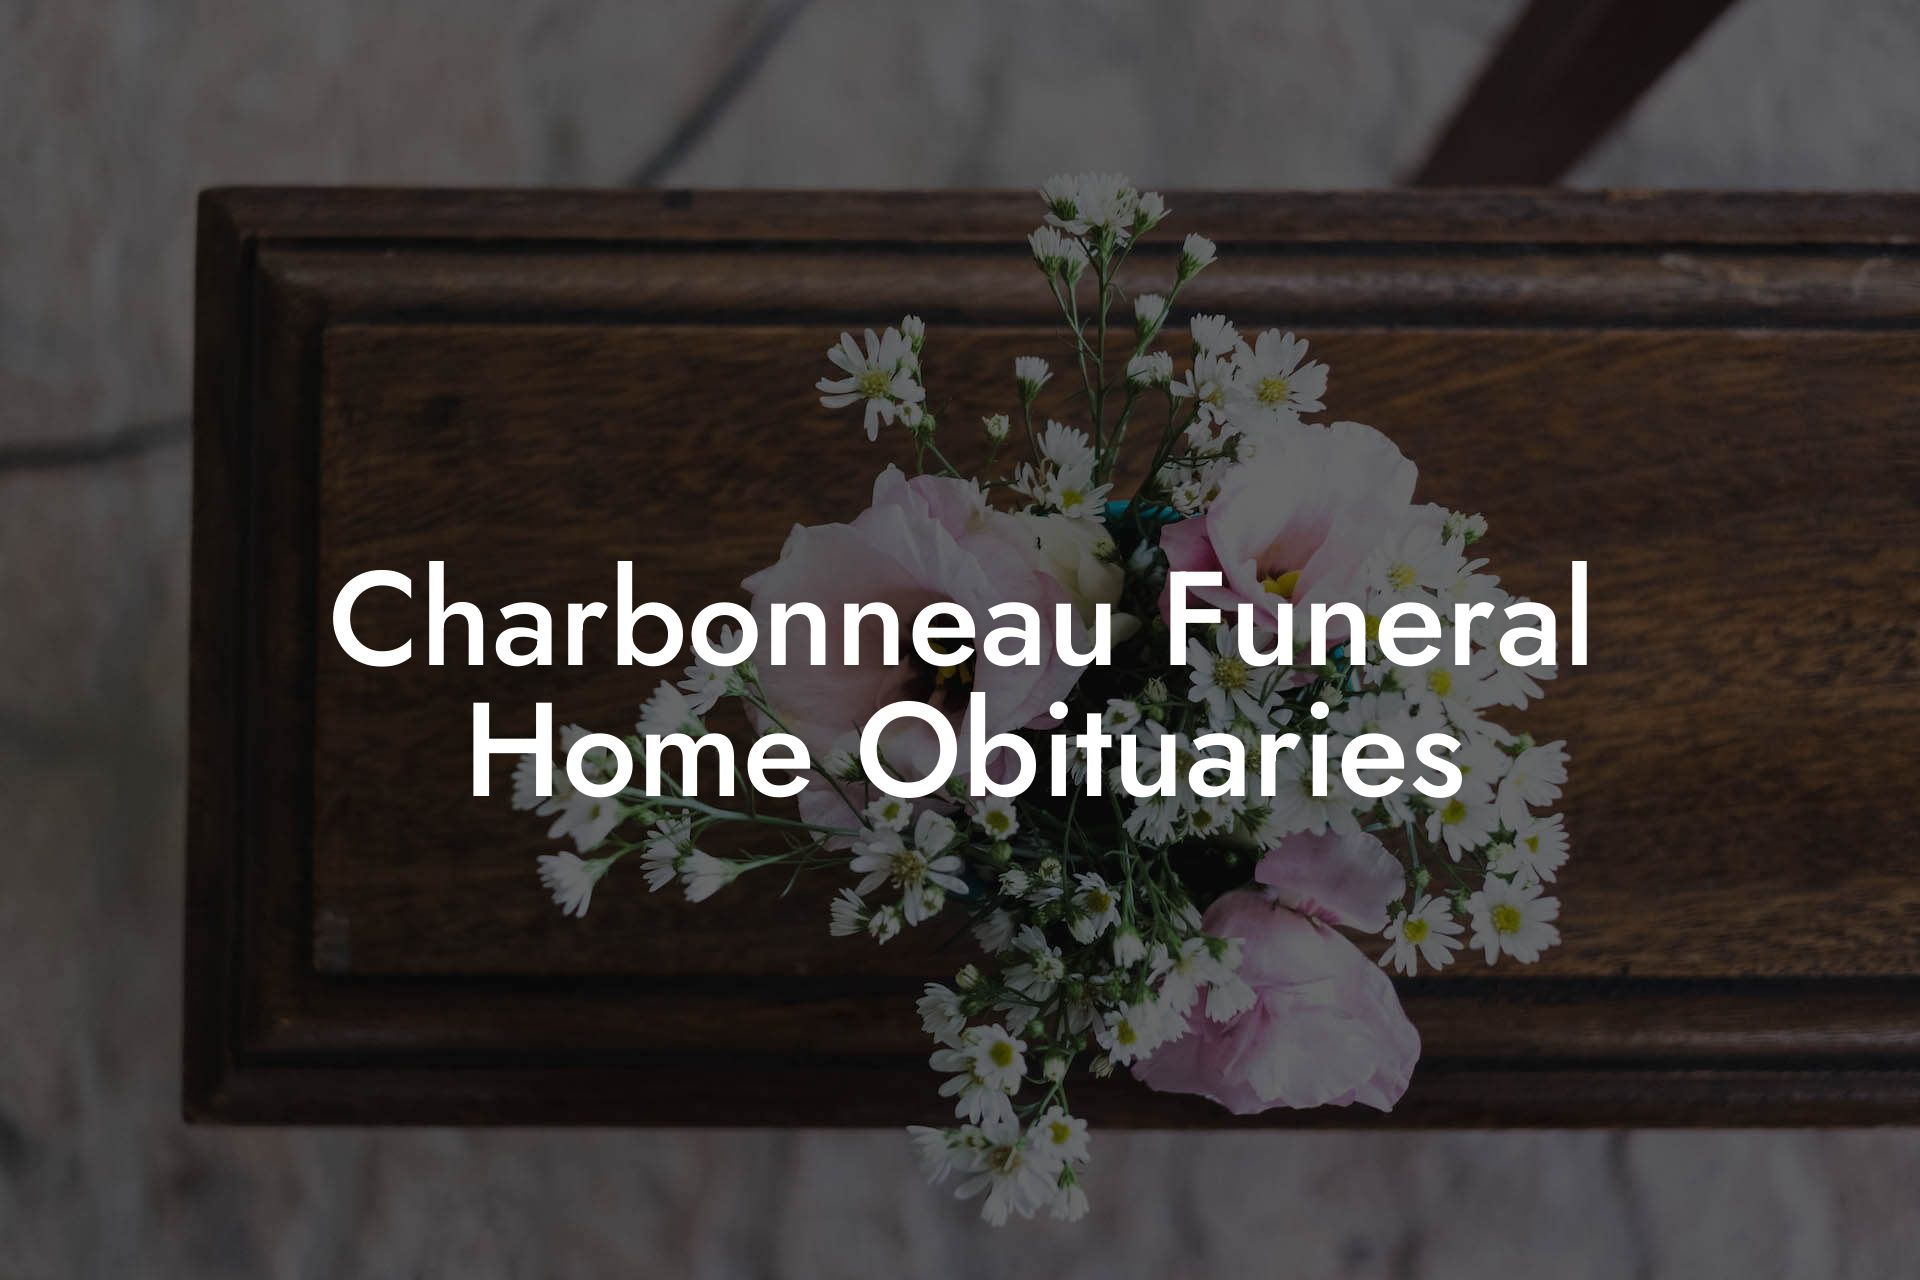 Charbonneau Funeral Home Obituaries